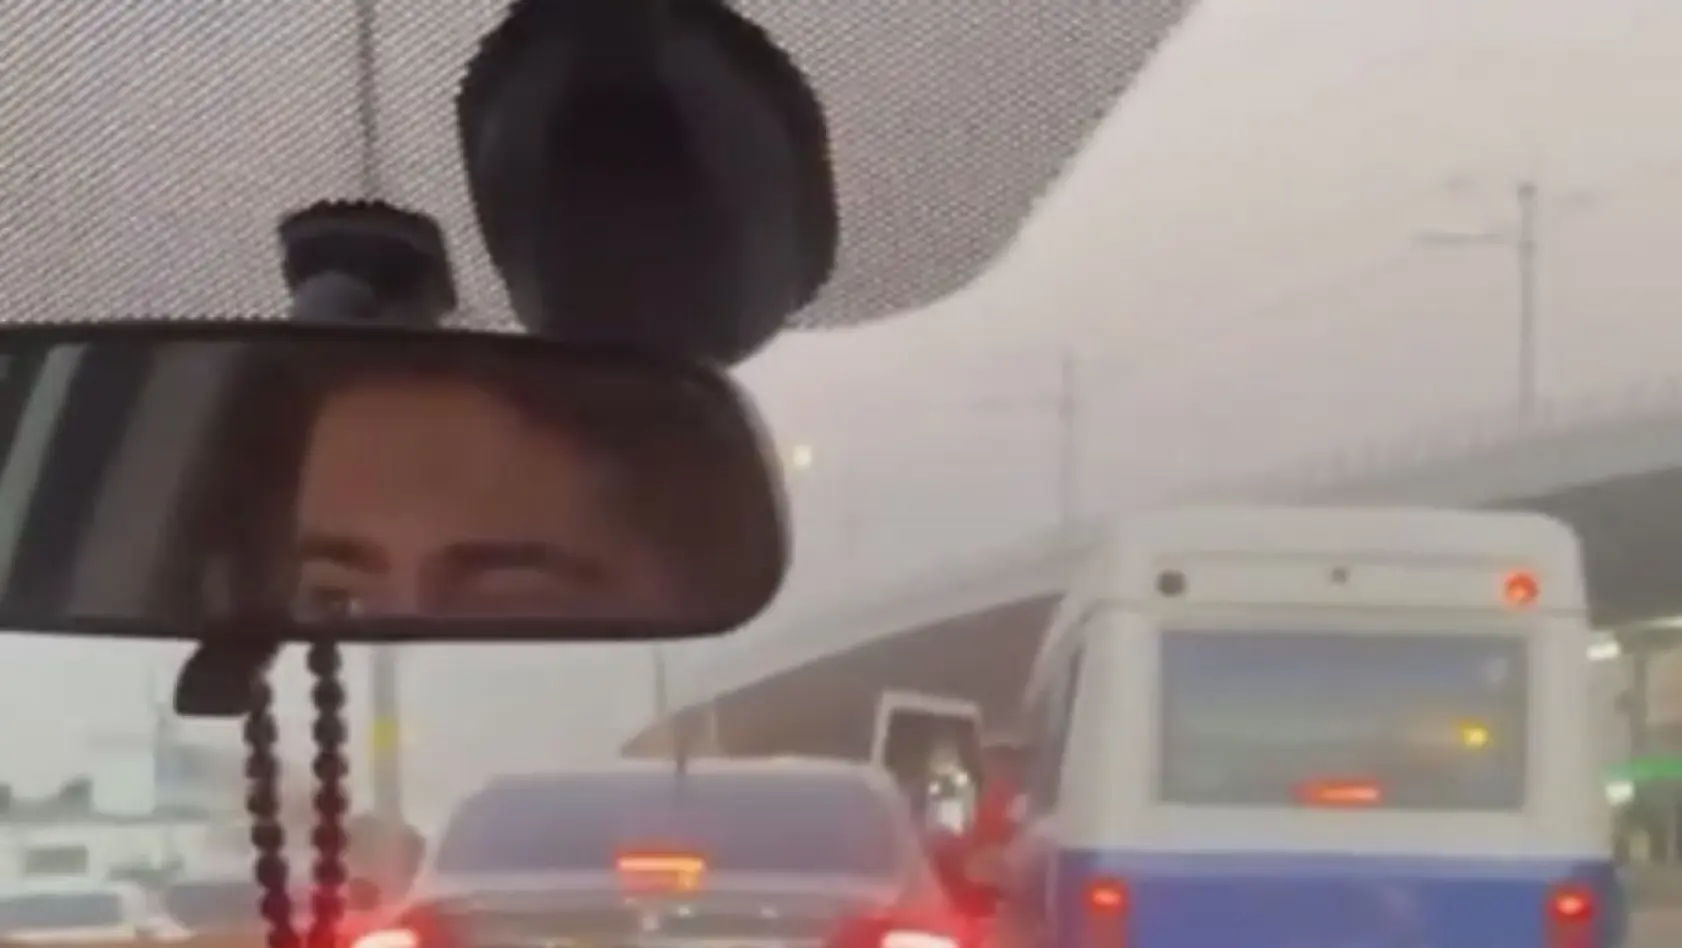 Bursa'da sürücülerin araçlarıyla yol verme kavgası kameralarda